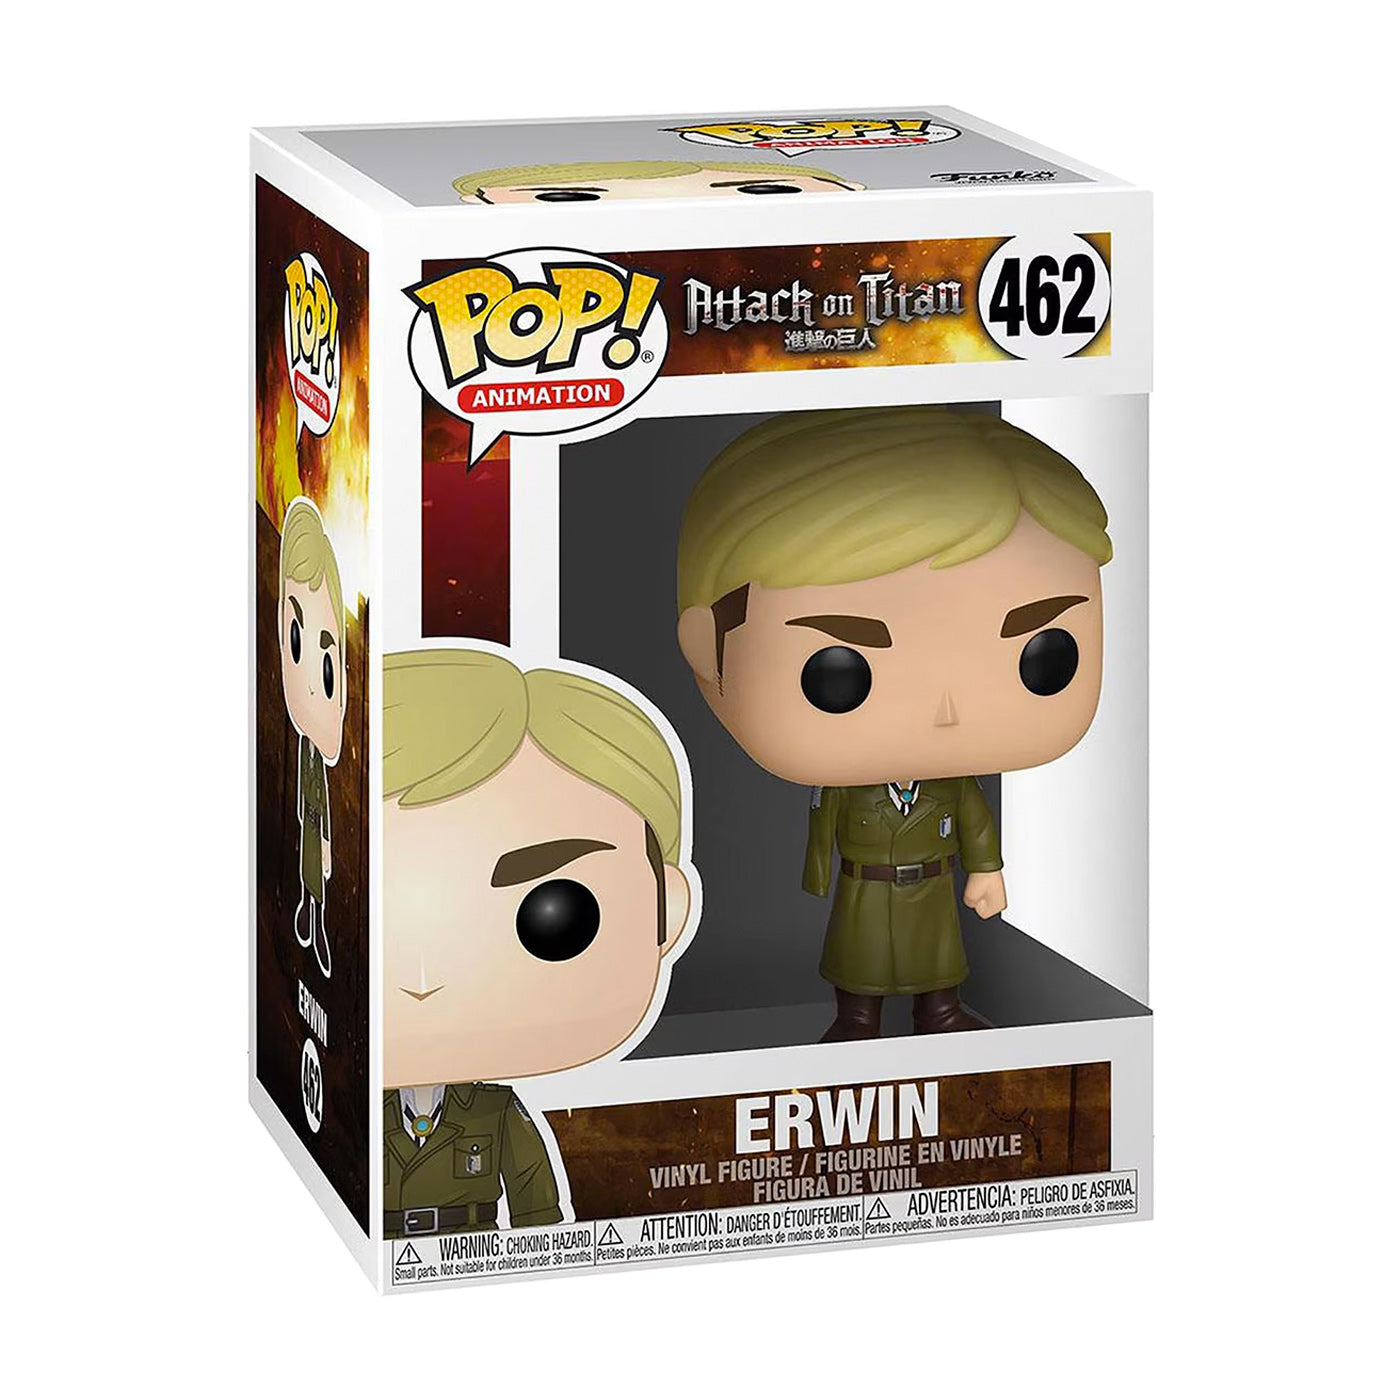 Funko Pop: Erwin (462)